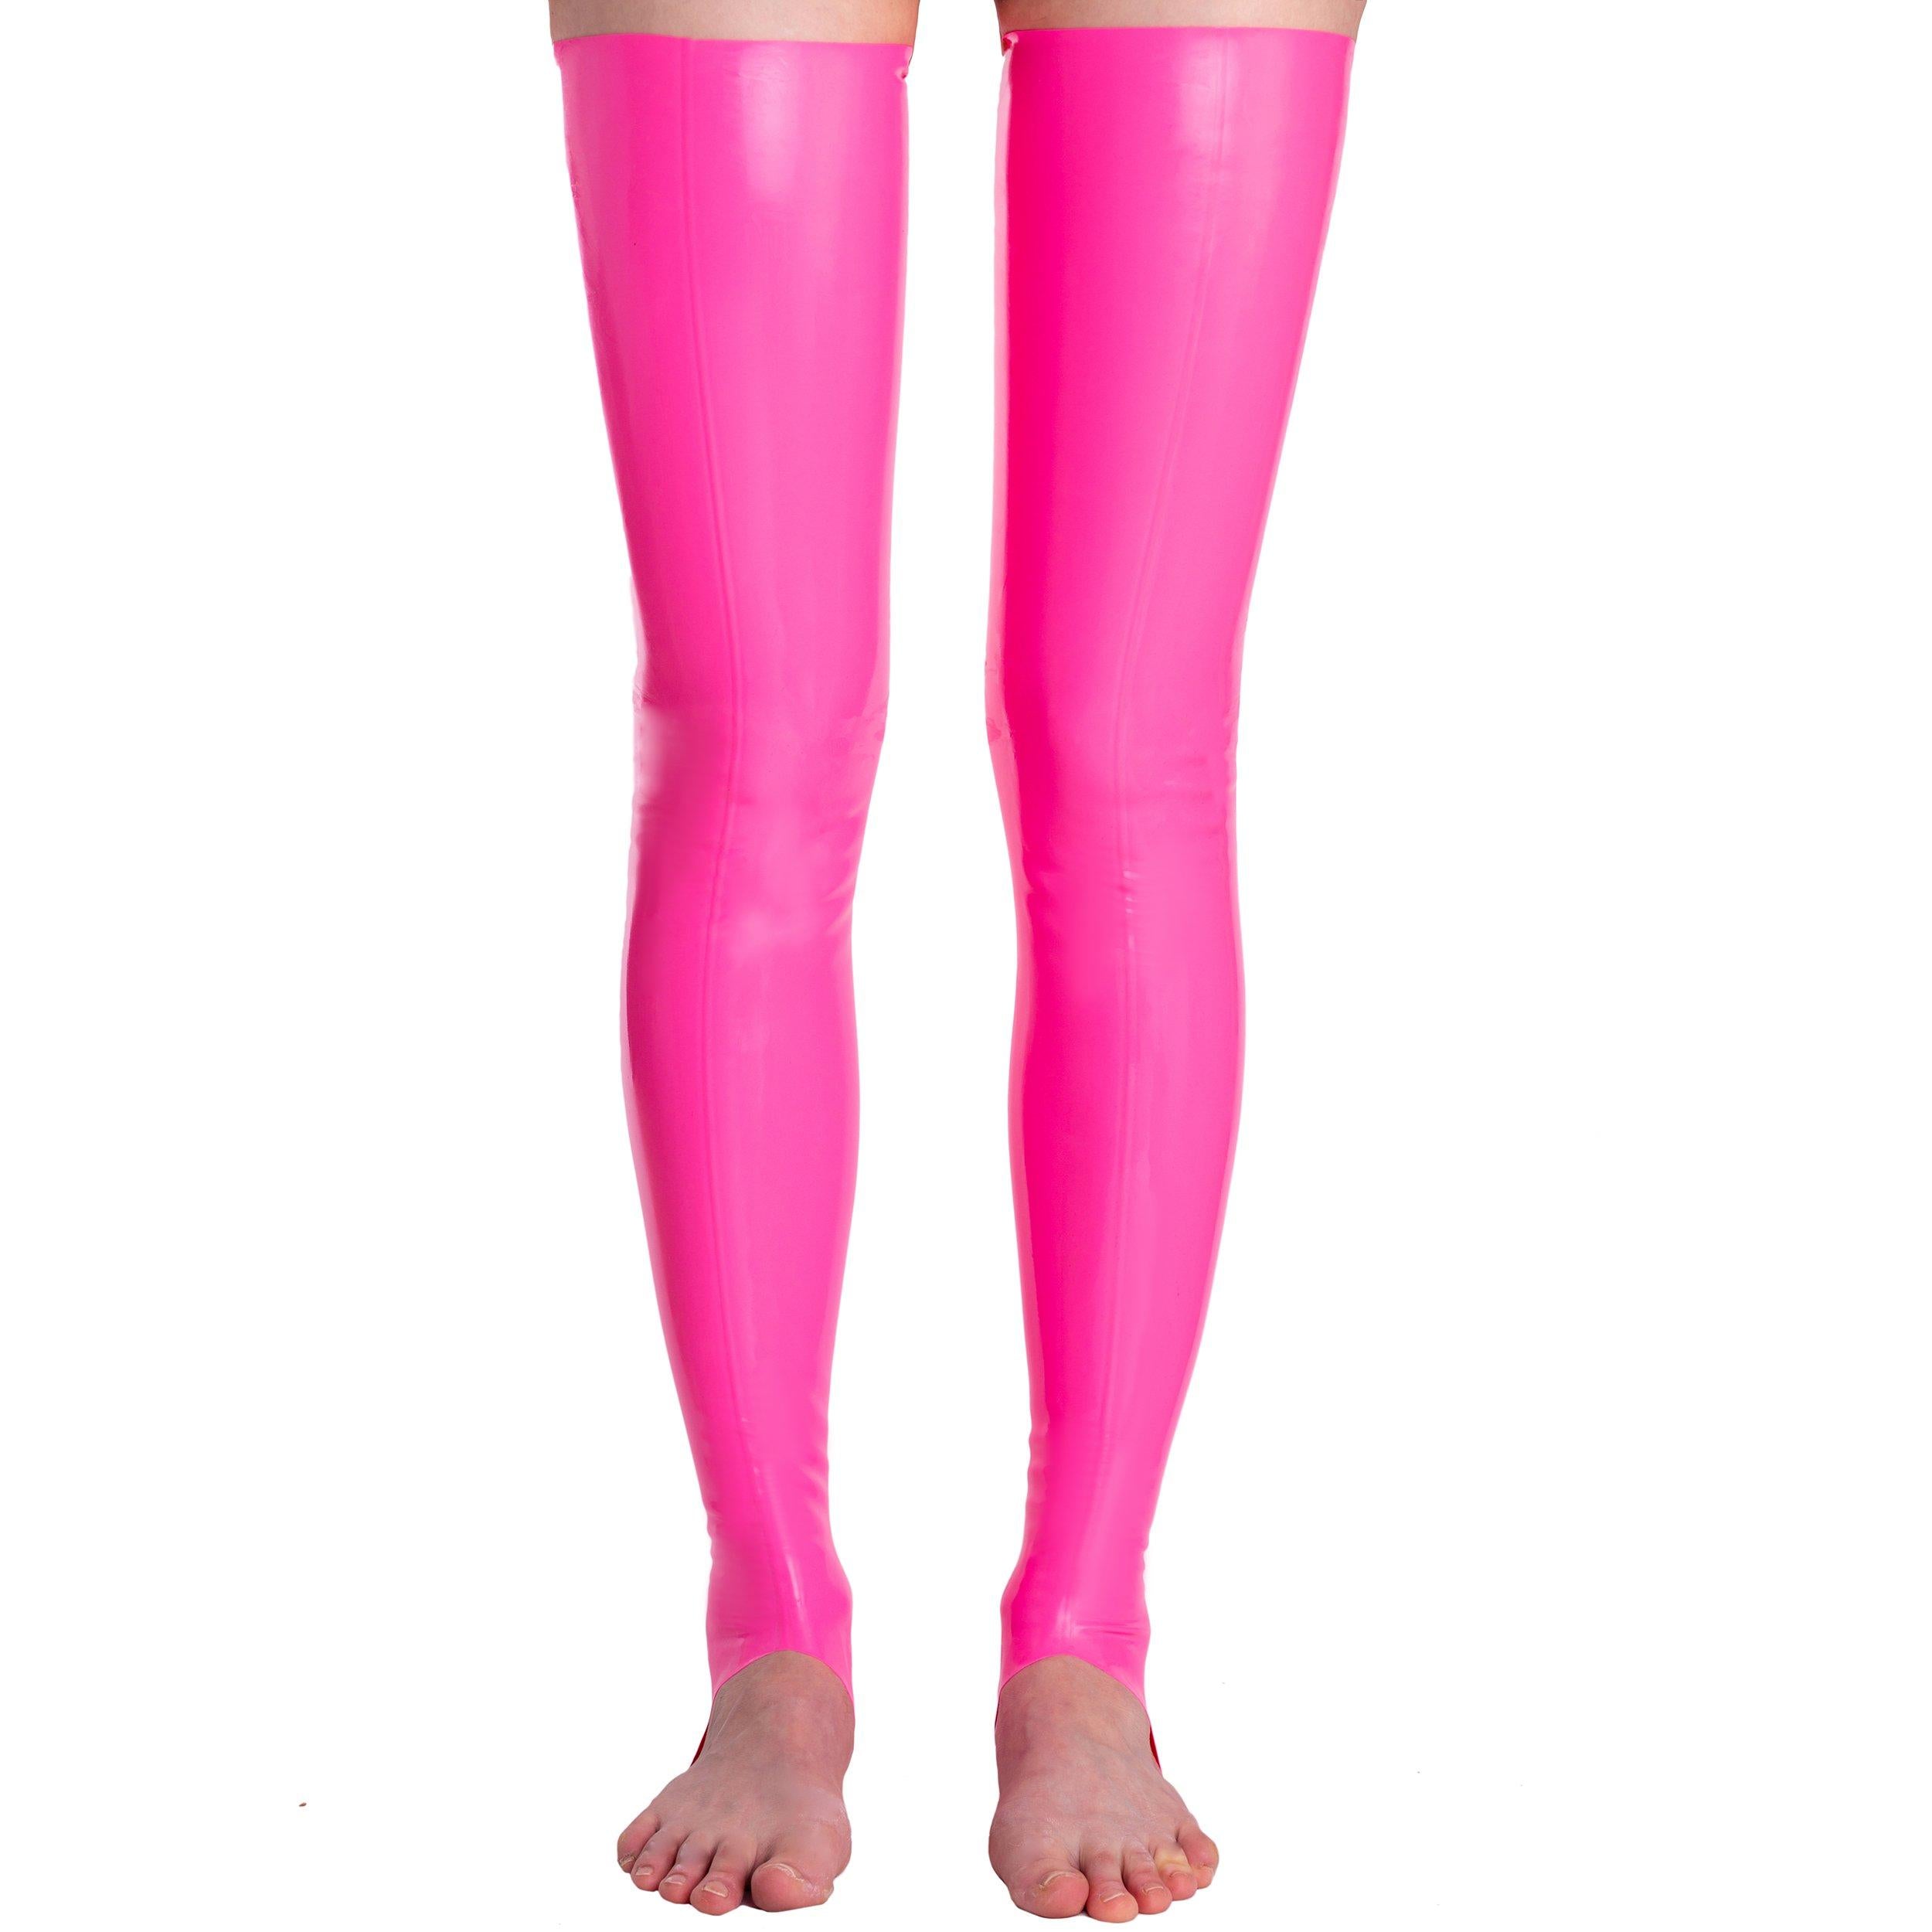 Rubberfashion Latex Strümpfe lang offene Zehen - Overknee Oberschenkel Strumpf - Sexy Socken für Damen und Herren